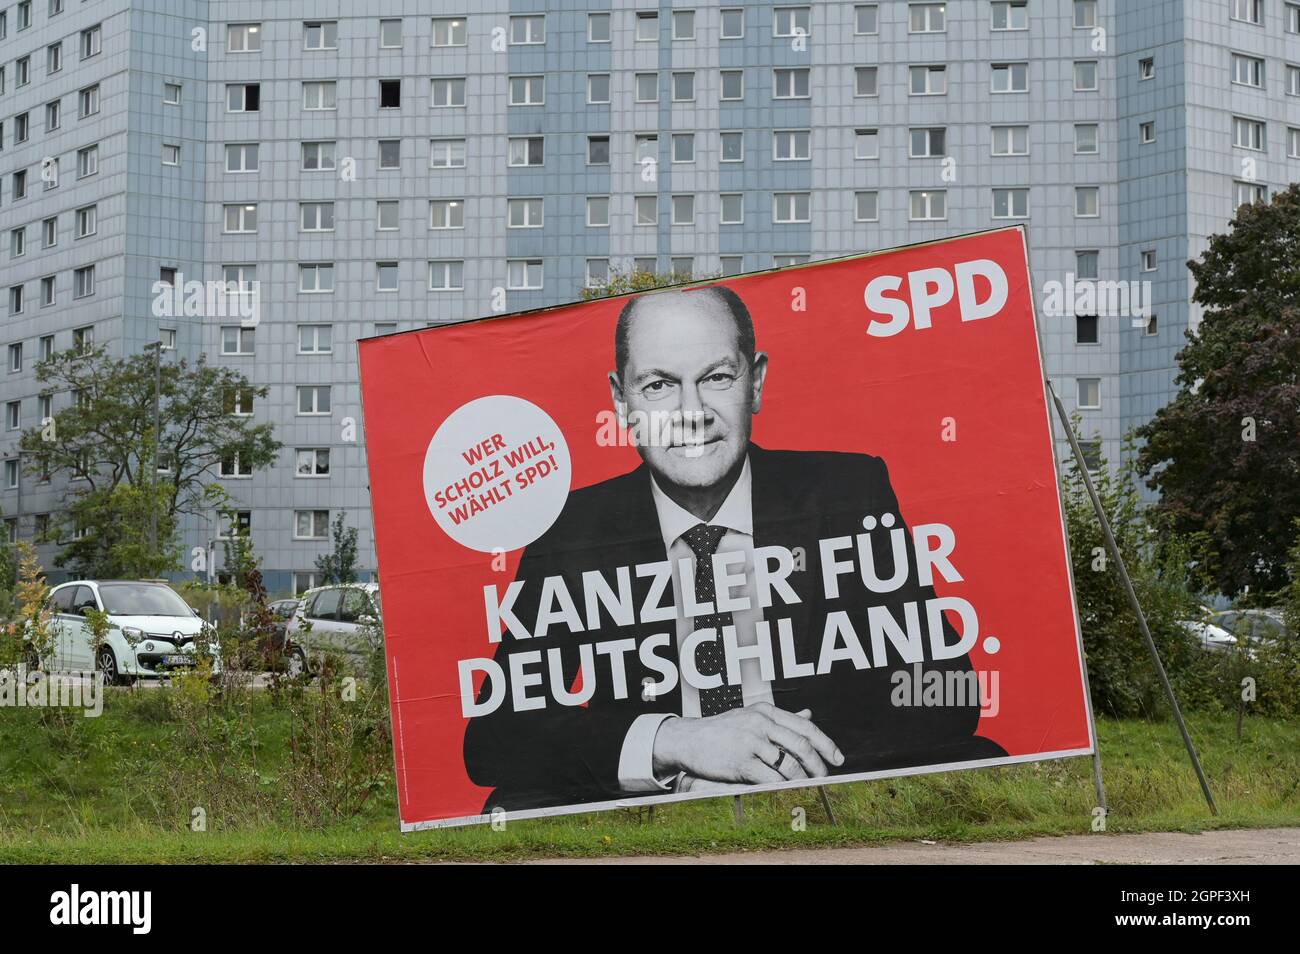 Allemagne, Erfurt, ancienne Allemagne de l'est, élection au Parlement en 2021, affiche du SPD du parti social-démocrate avec le candidat à la chancelière OLAF Scholz, campagne électorale et publicité Banque D'Images